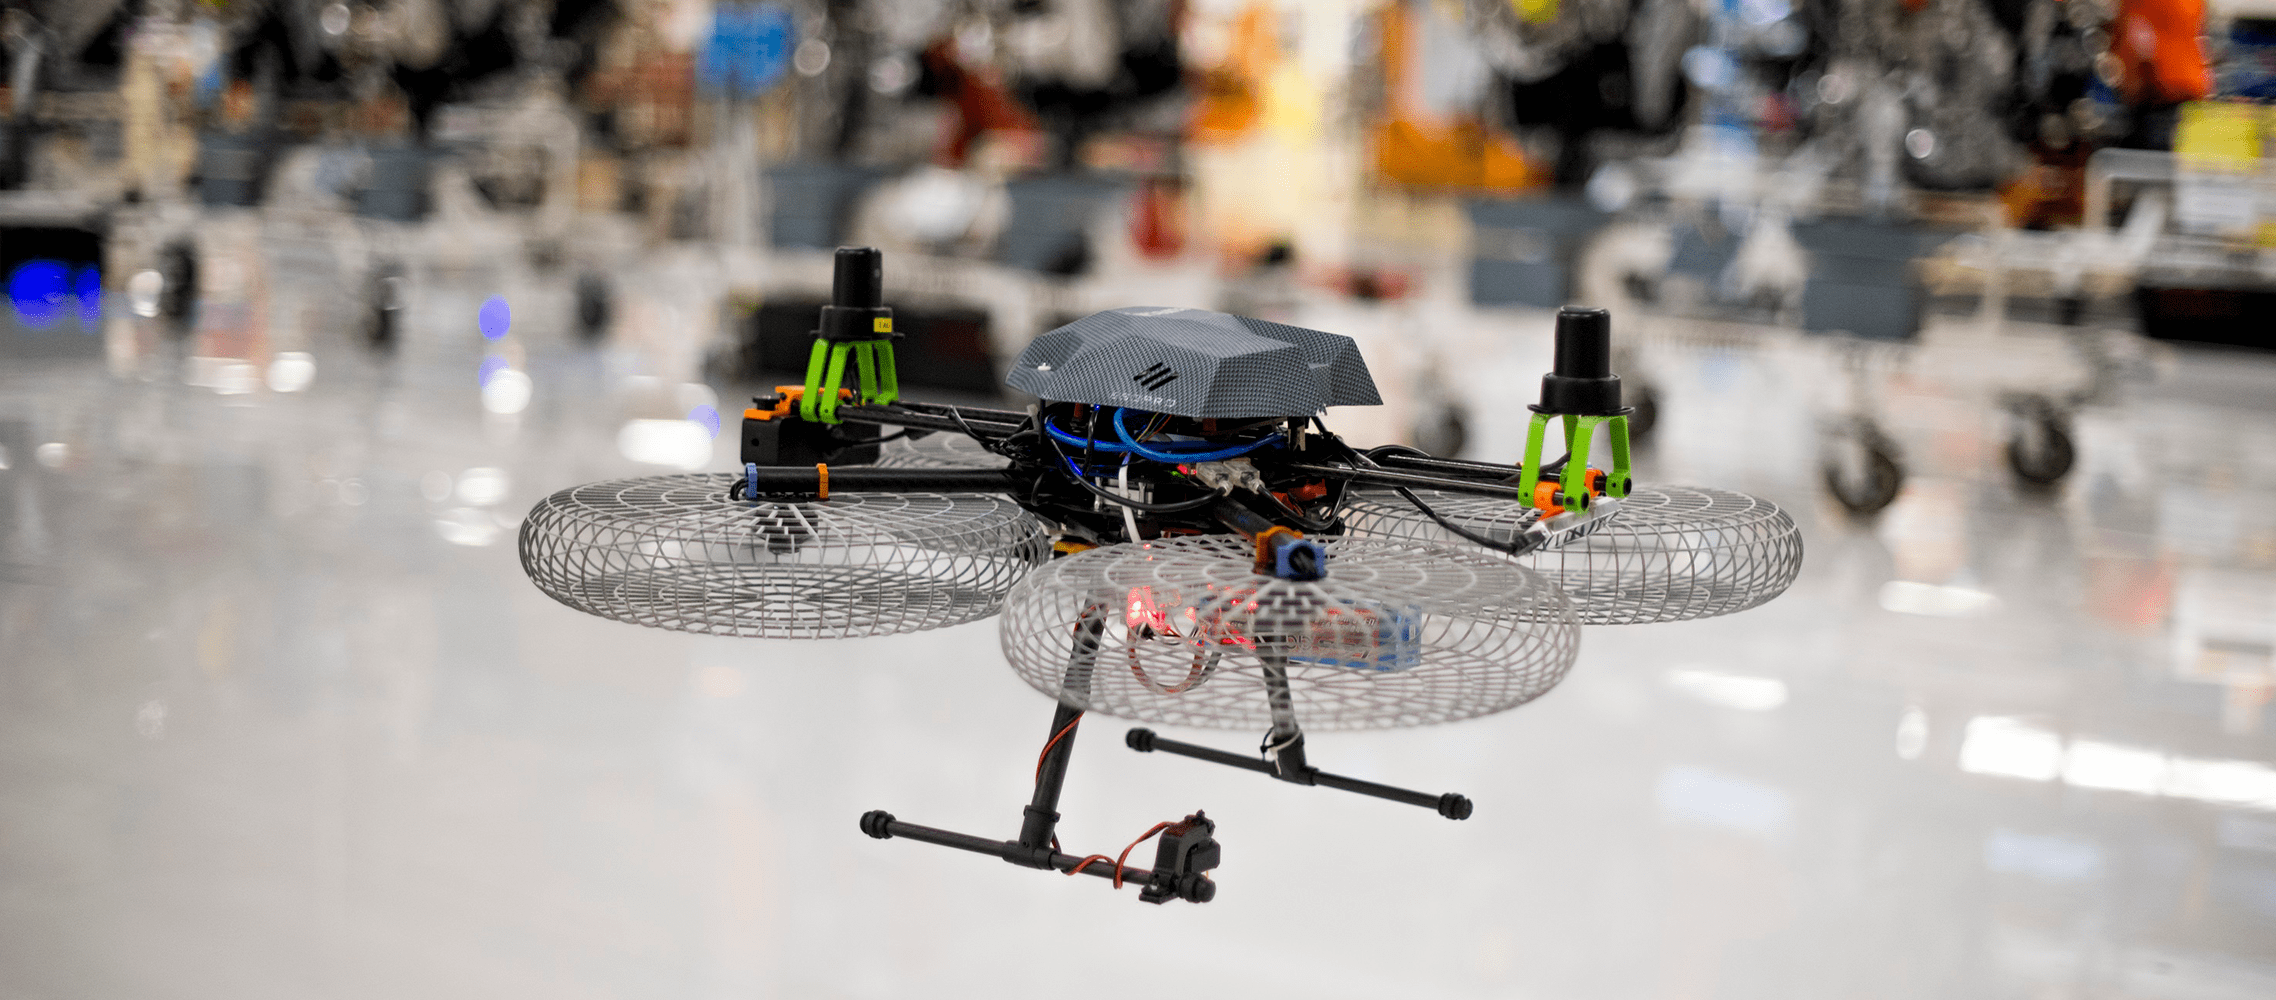 W fabryce marki Cupra w Martorell testowane są wyjątkowe rozwiązania, np. transport części za pomocą dronów